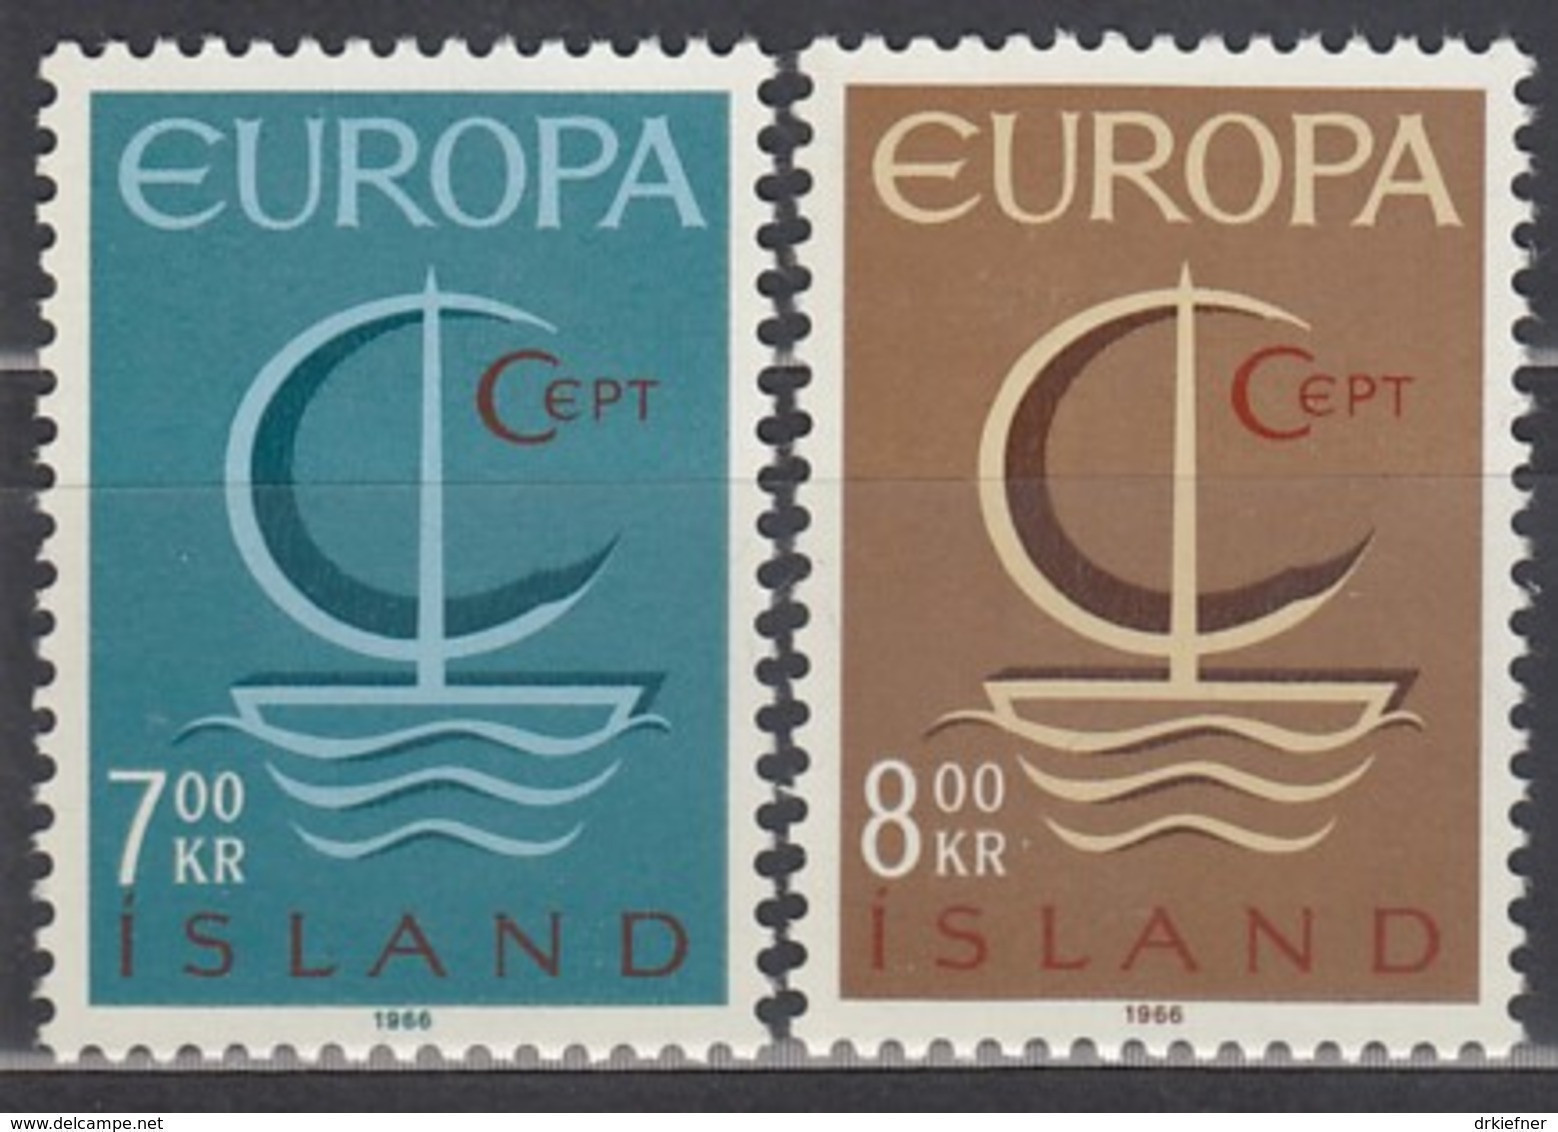 ISLAND  404-405, Postfrisch **, Europa CEPT 1966 - Unused Stamps